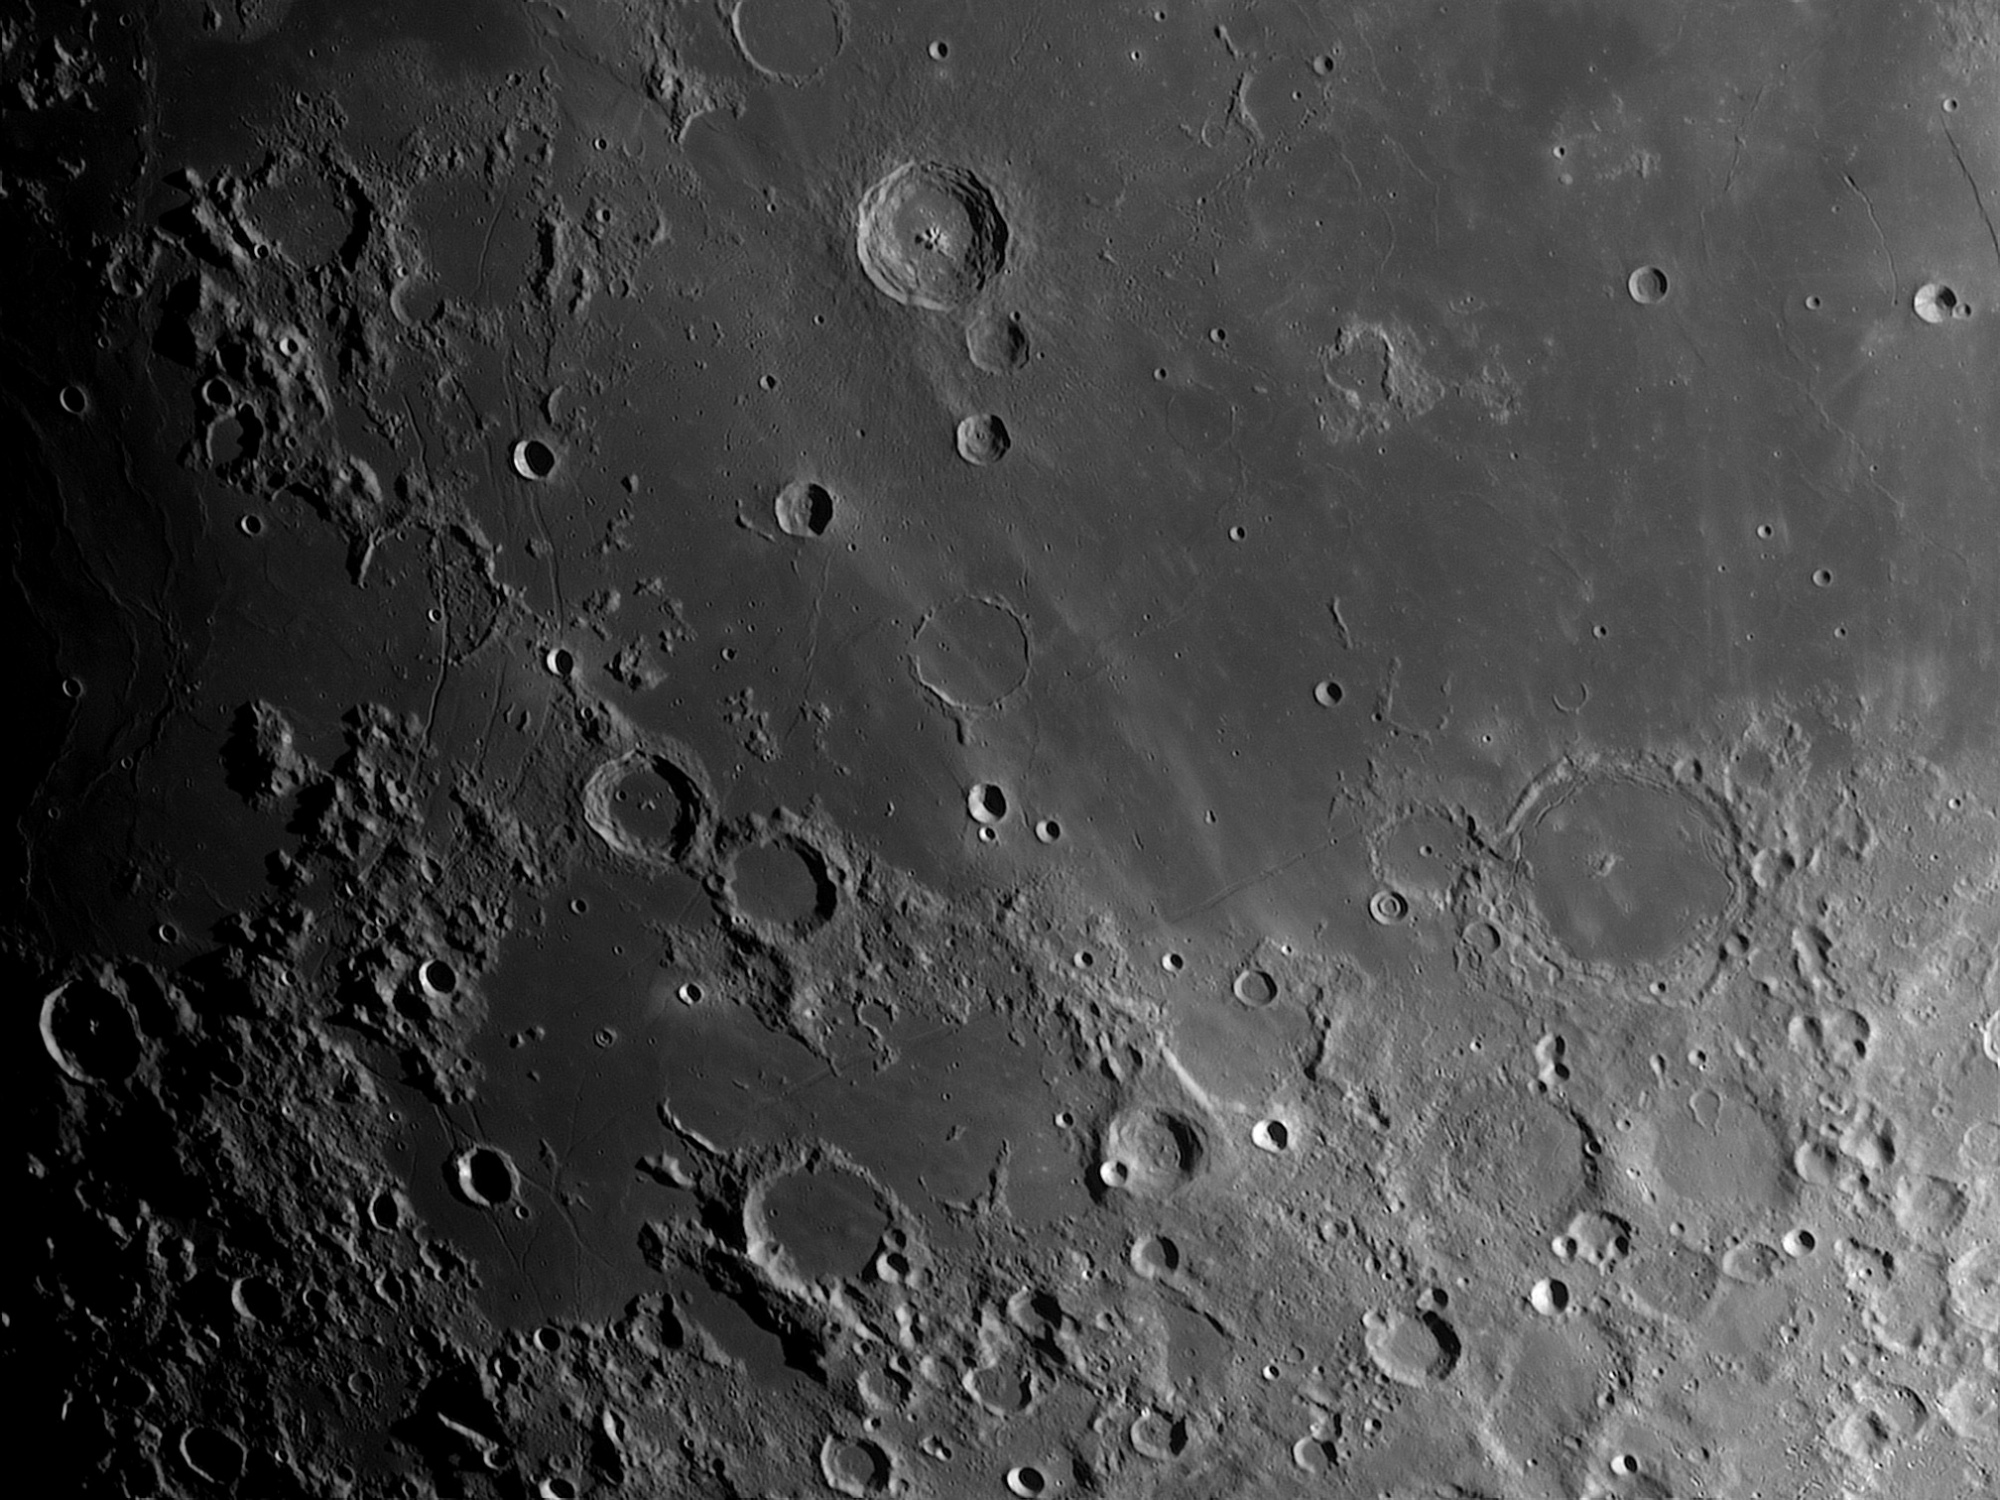 Lune-20210422_Pitatus-ba08-AS.thumb.jpg.0575db6321af37fd0a83664f49c8b66d.jpg